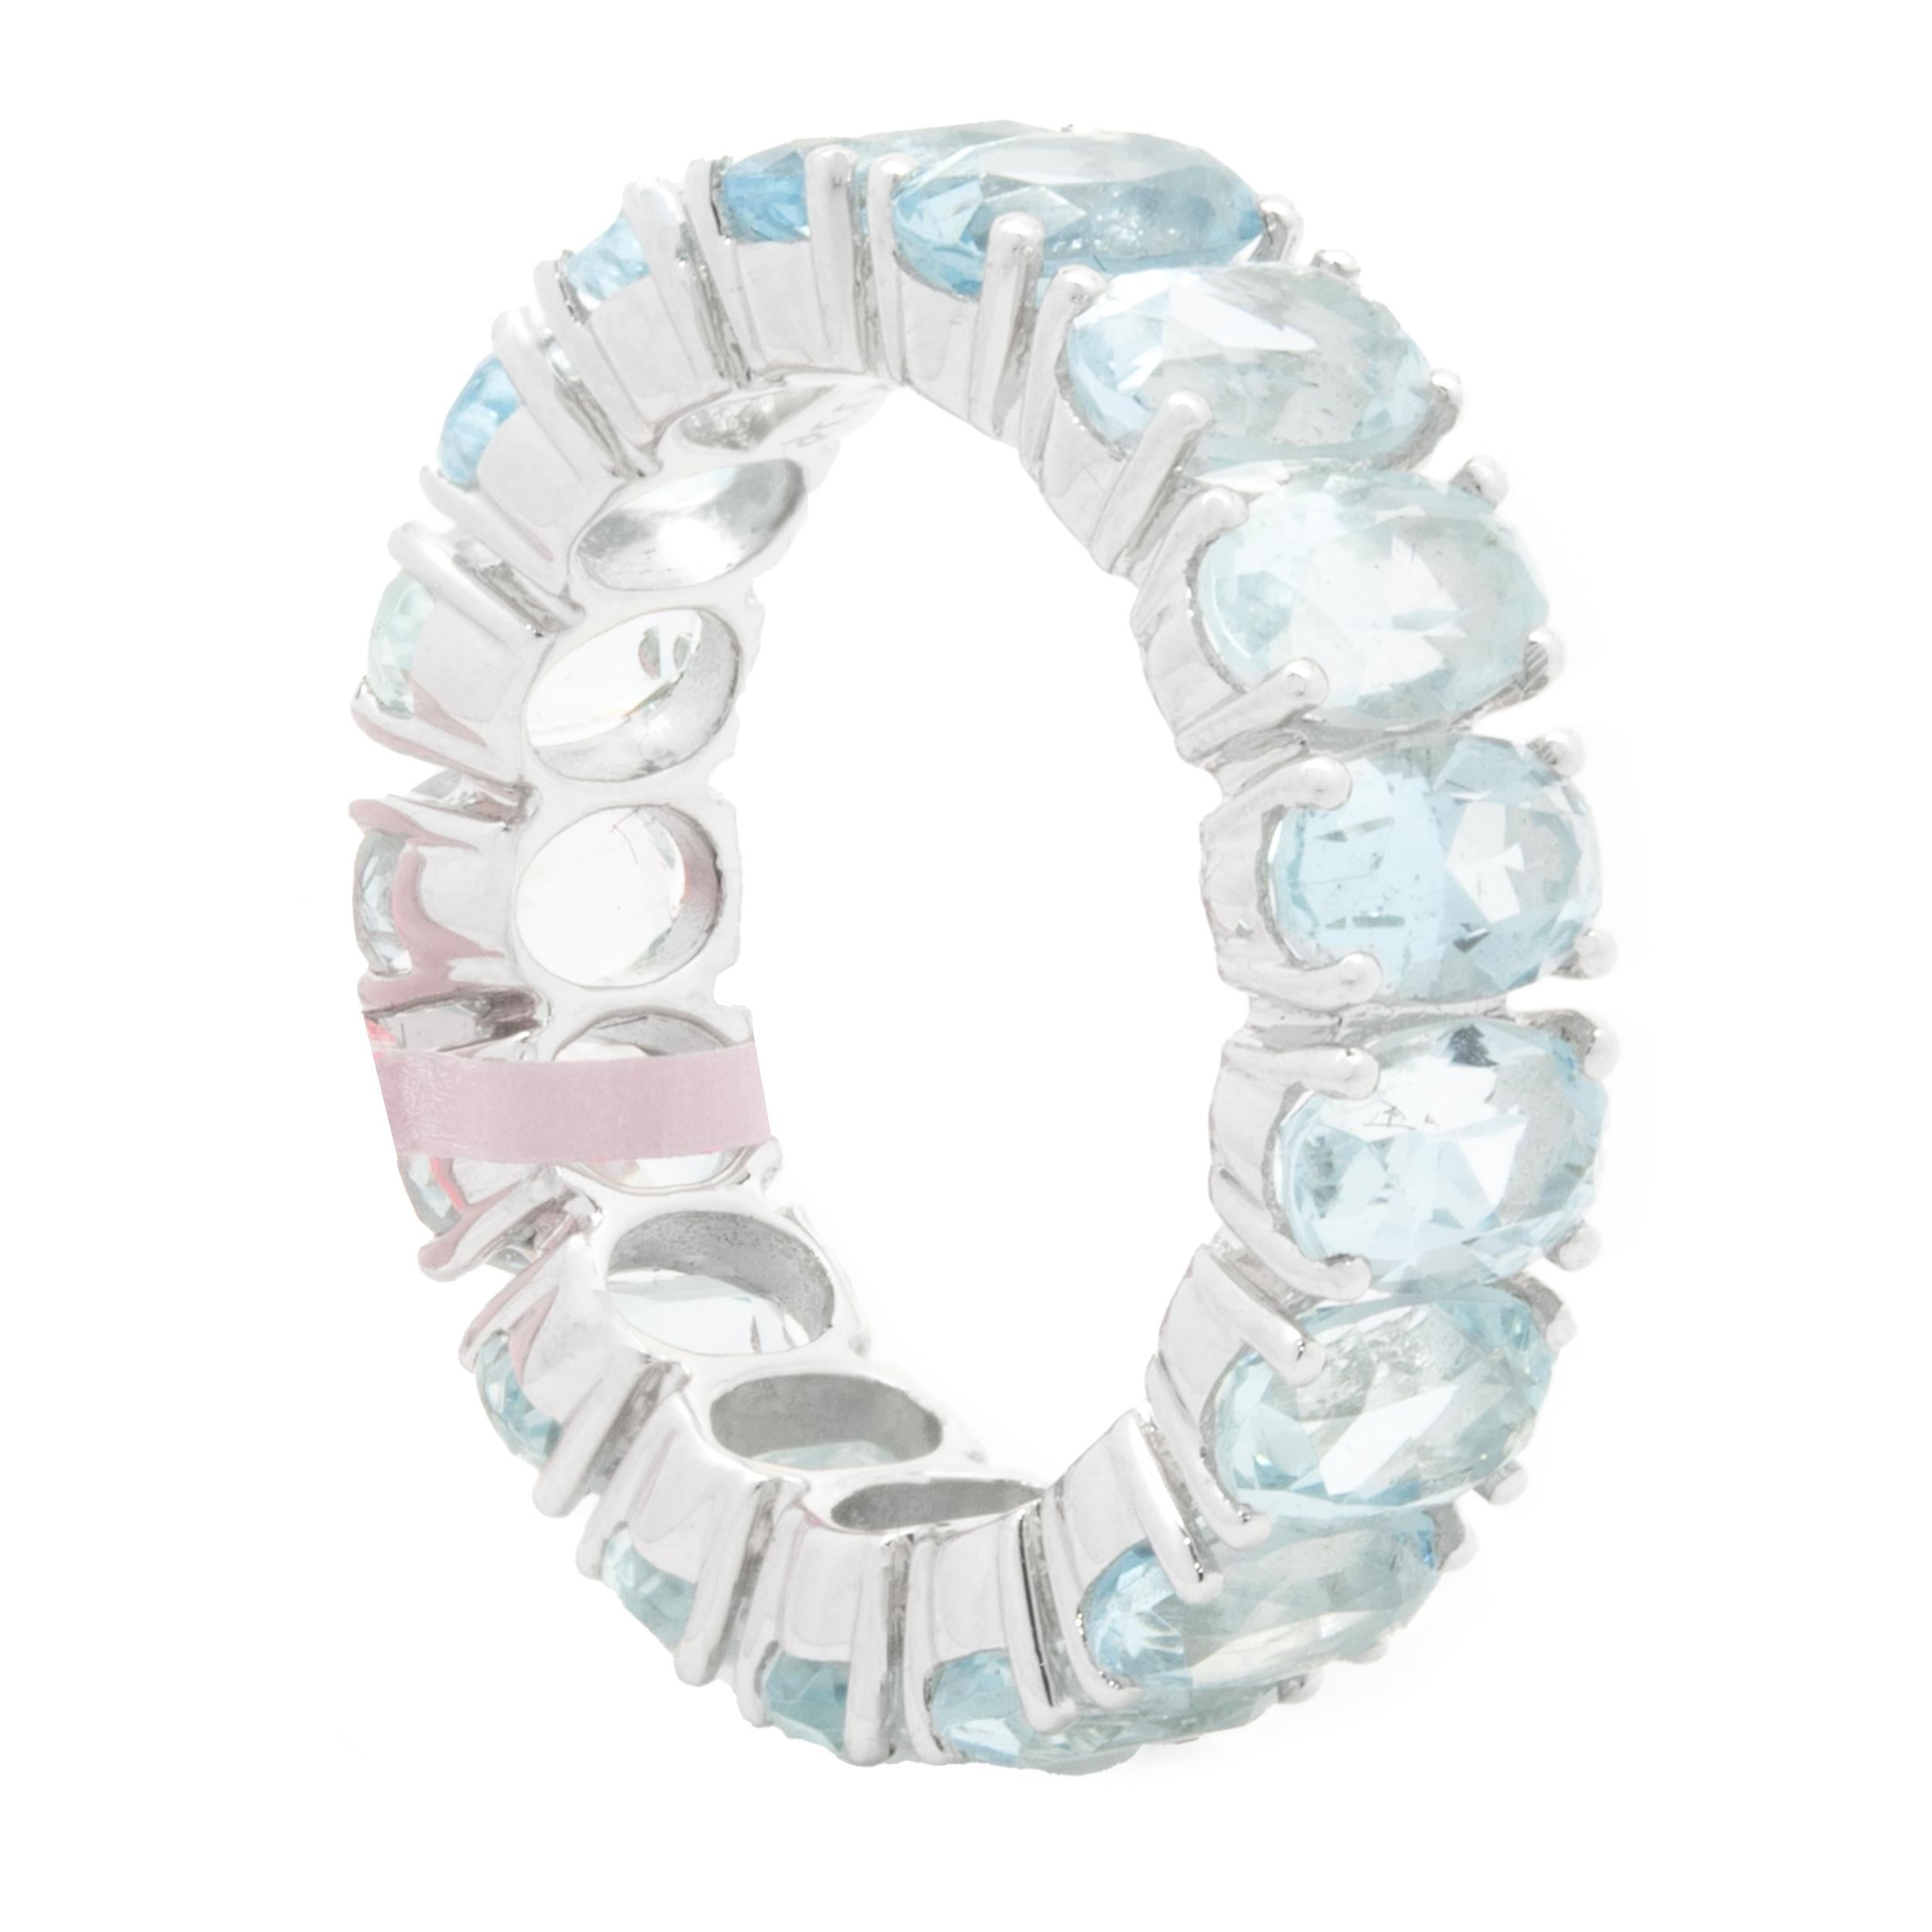 aquamarine eternity ring